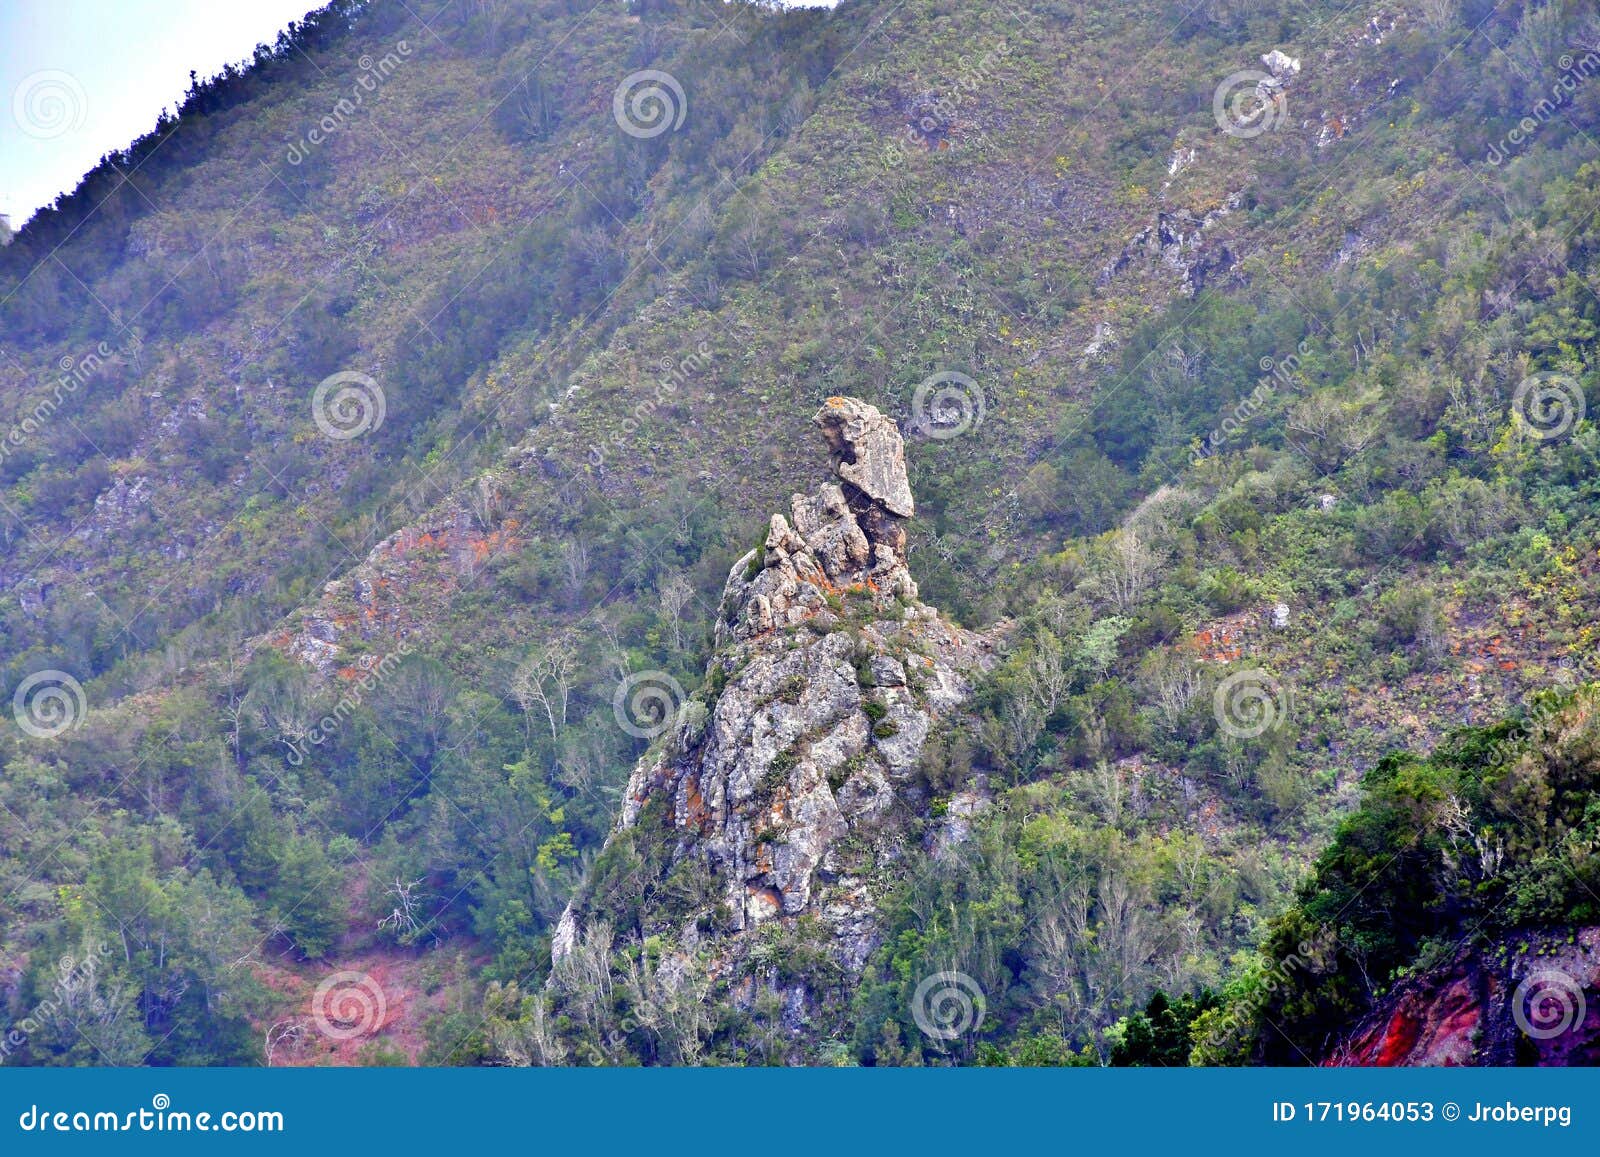 roque de taborno in the anaga mountain range